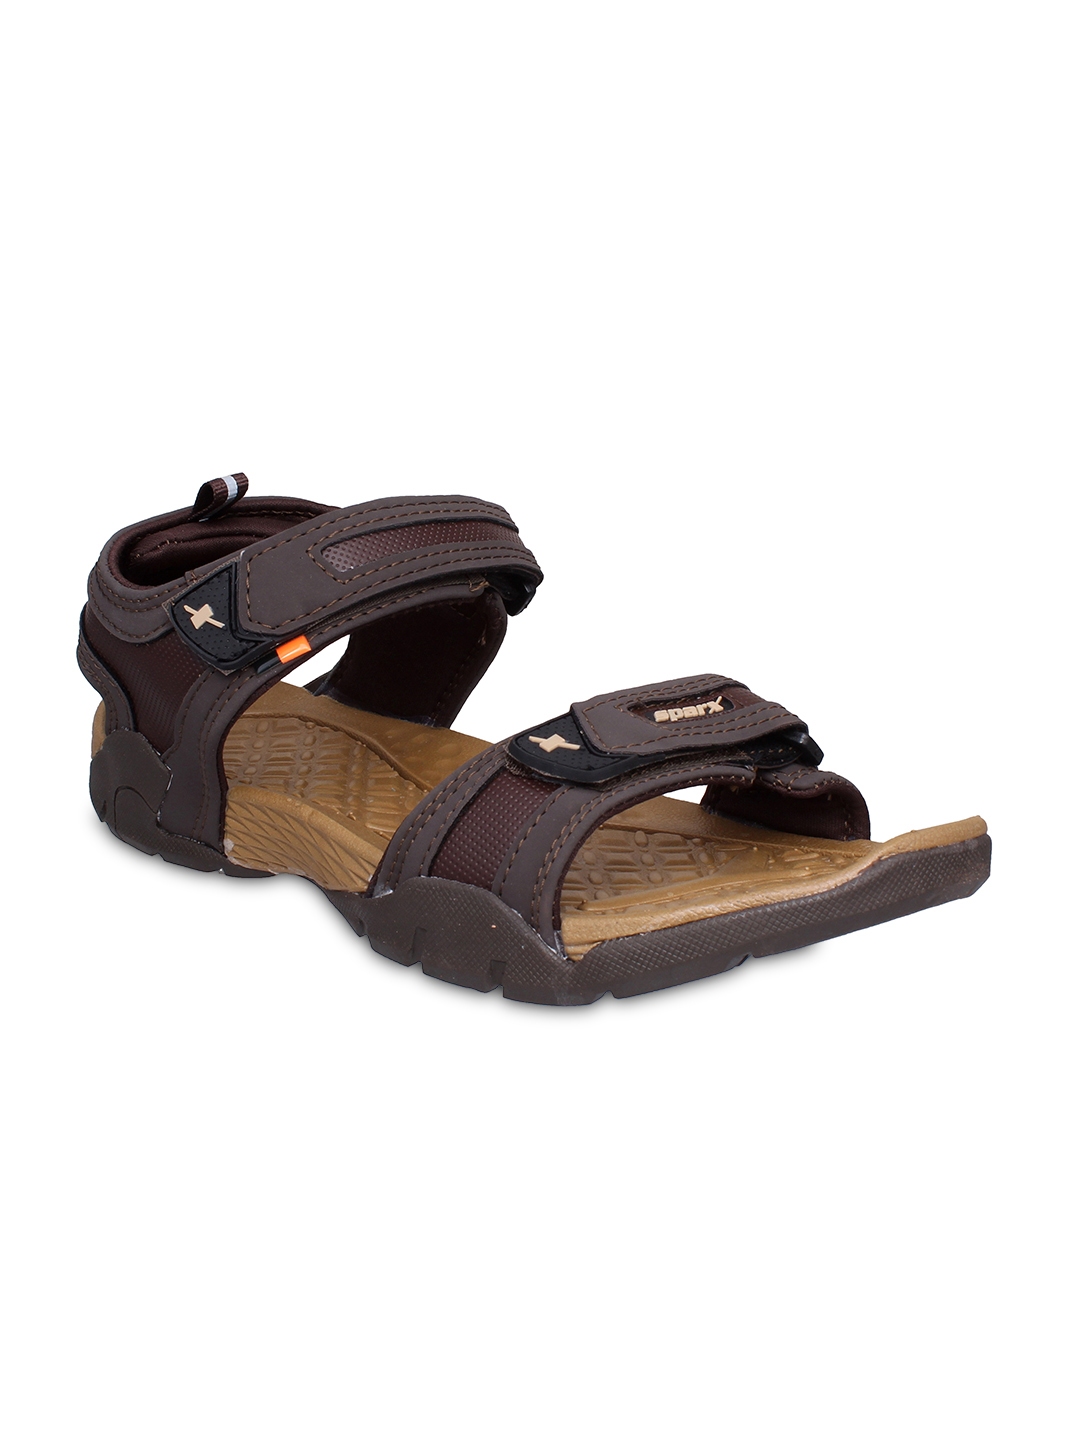 Buy Sparx Men Brown Comfort Sandals - Sandals for Men 6802329 | Myntra